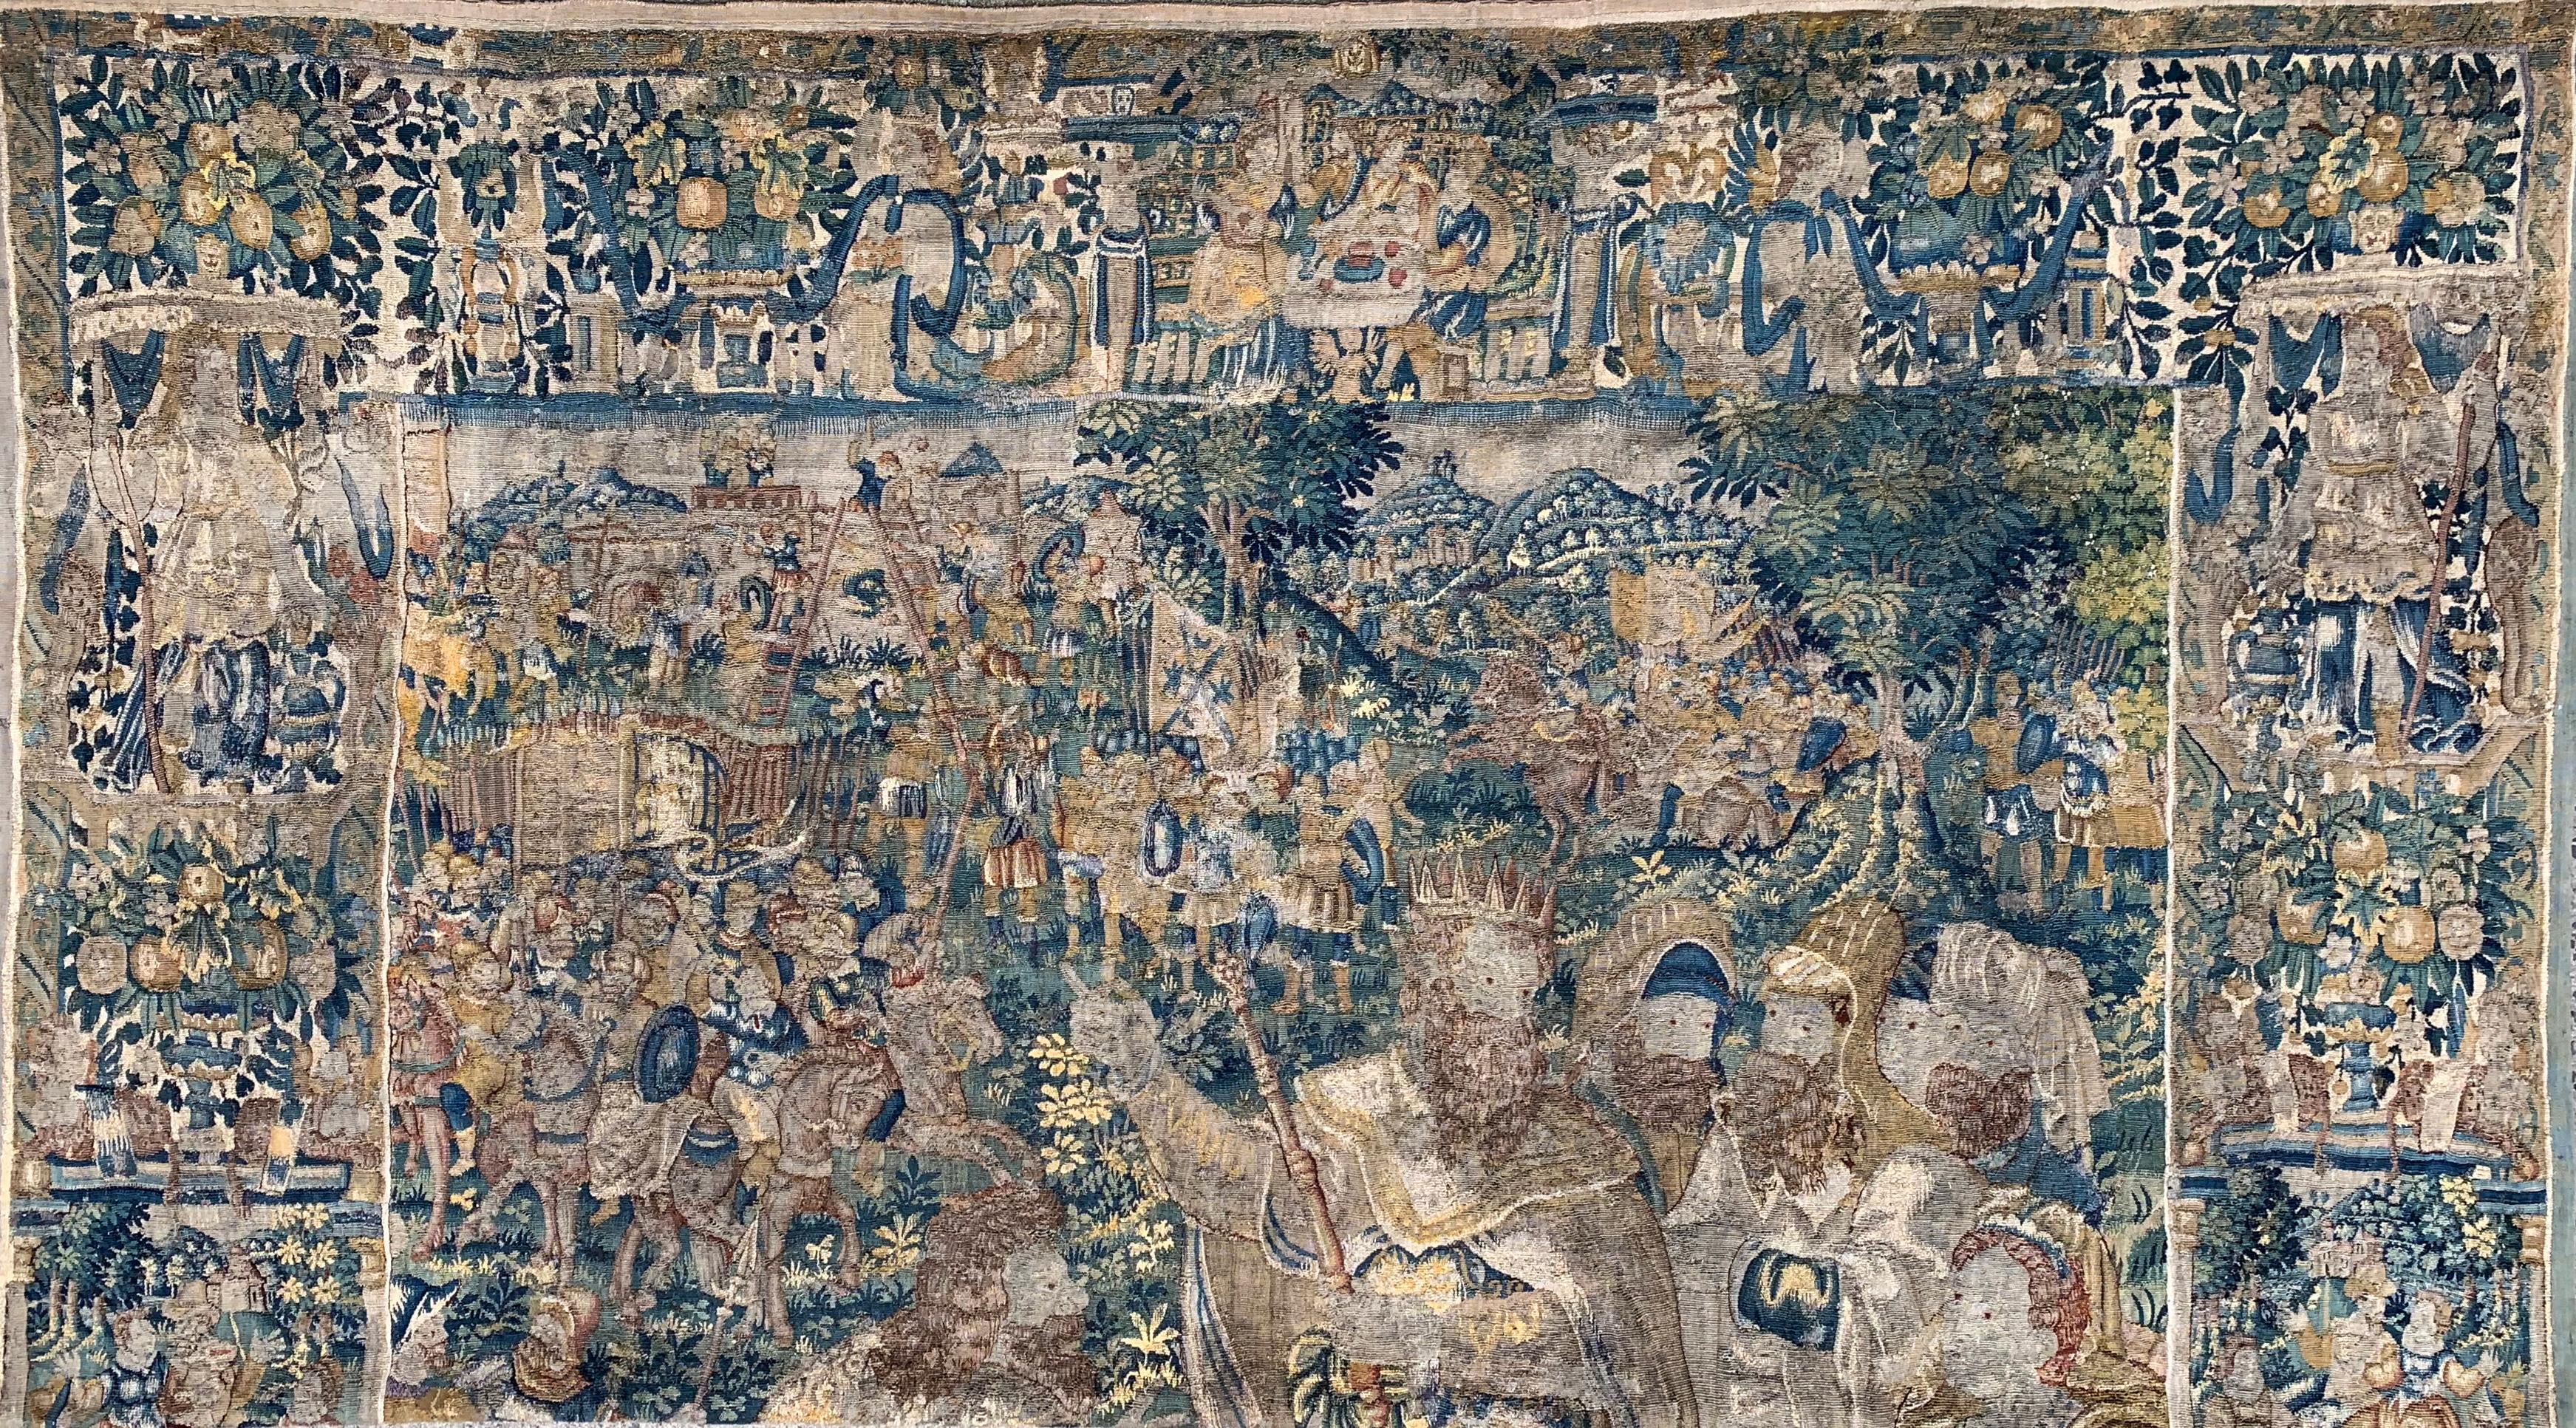 Ein prächtiger biblischer Wandteppich aus Wolle und Seide, der wahrscheinlich in der flämischen Weberei in Oudenaarde hergestellt wurde. Die Geschichte der Wandteppichproduktion reicht bis ins Jahr 1368 zurück. In der Stadt entstanden einige der